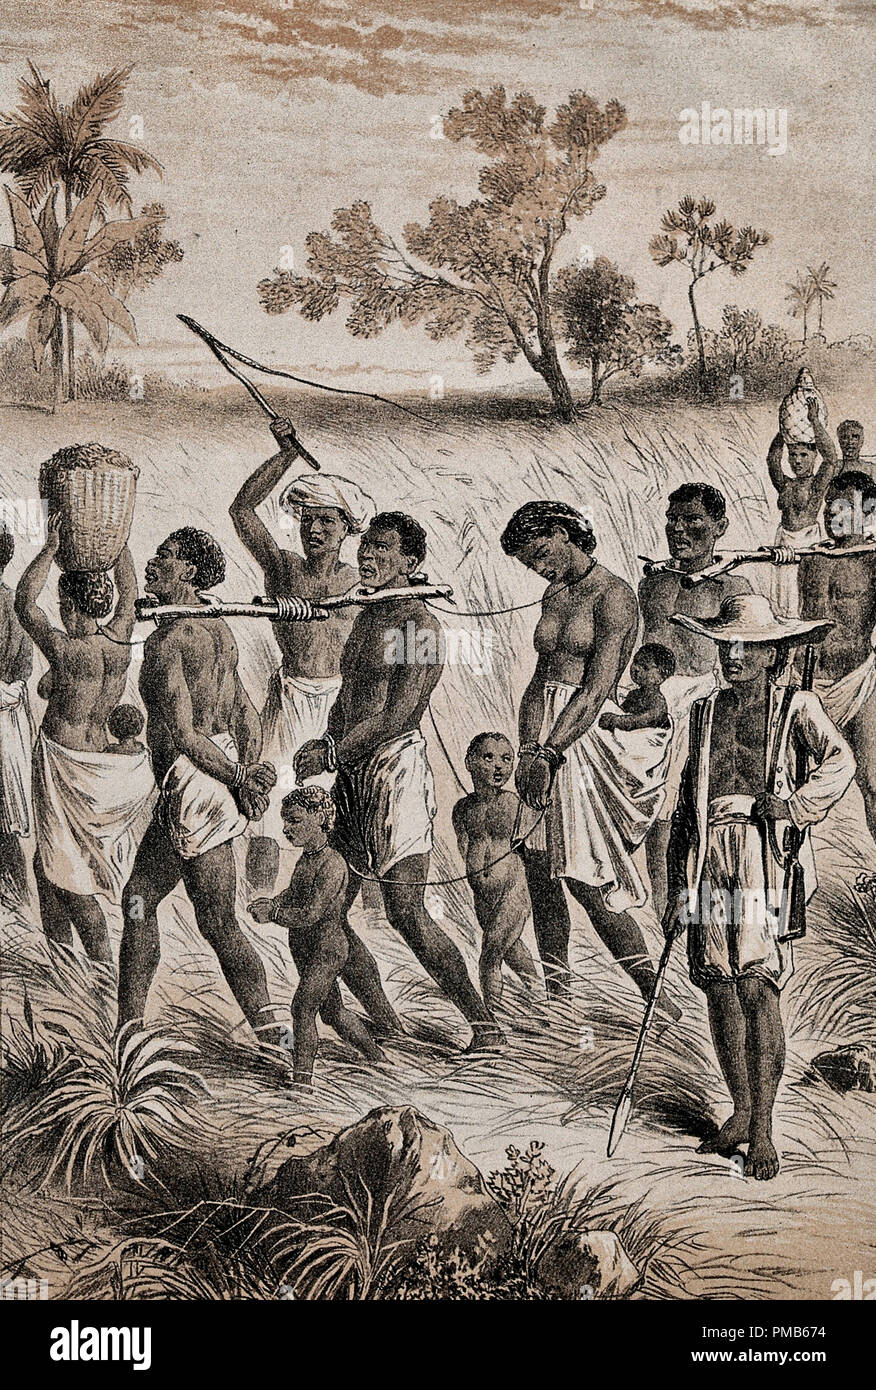 Gruppe der afrikanischen Männer, Frauen und Kinder gefangen genommen und in Fesseln, werden von Männern mit Peitschen und Pistolen, um Sklaven zu werden Zusammengetrieben. Band' von Gefangenen in die Sklaverei getrieben' Stockfoto